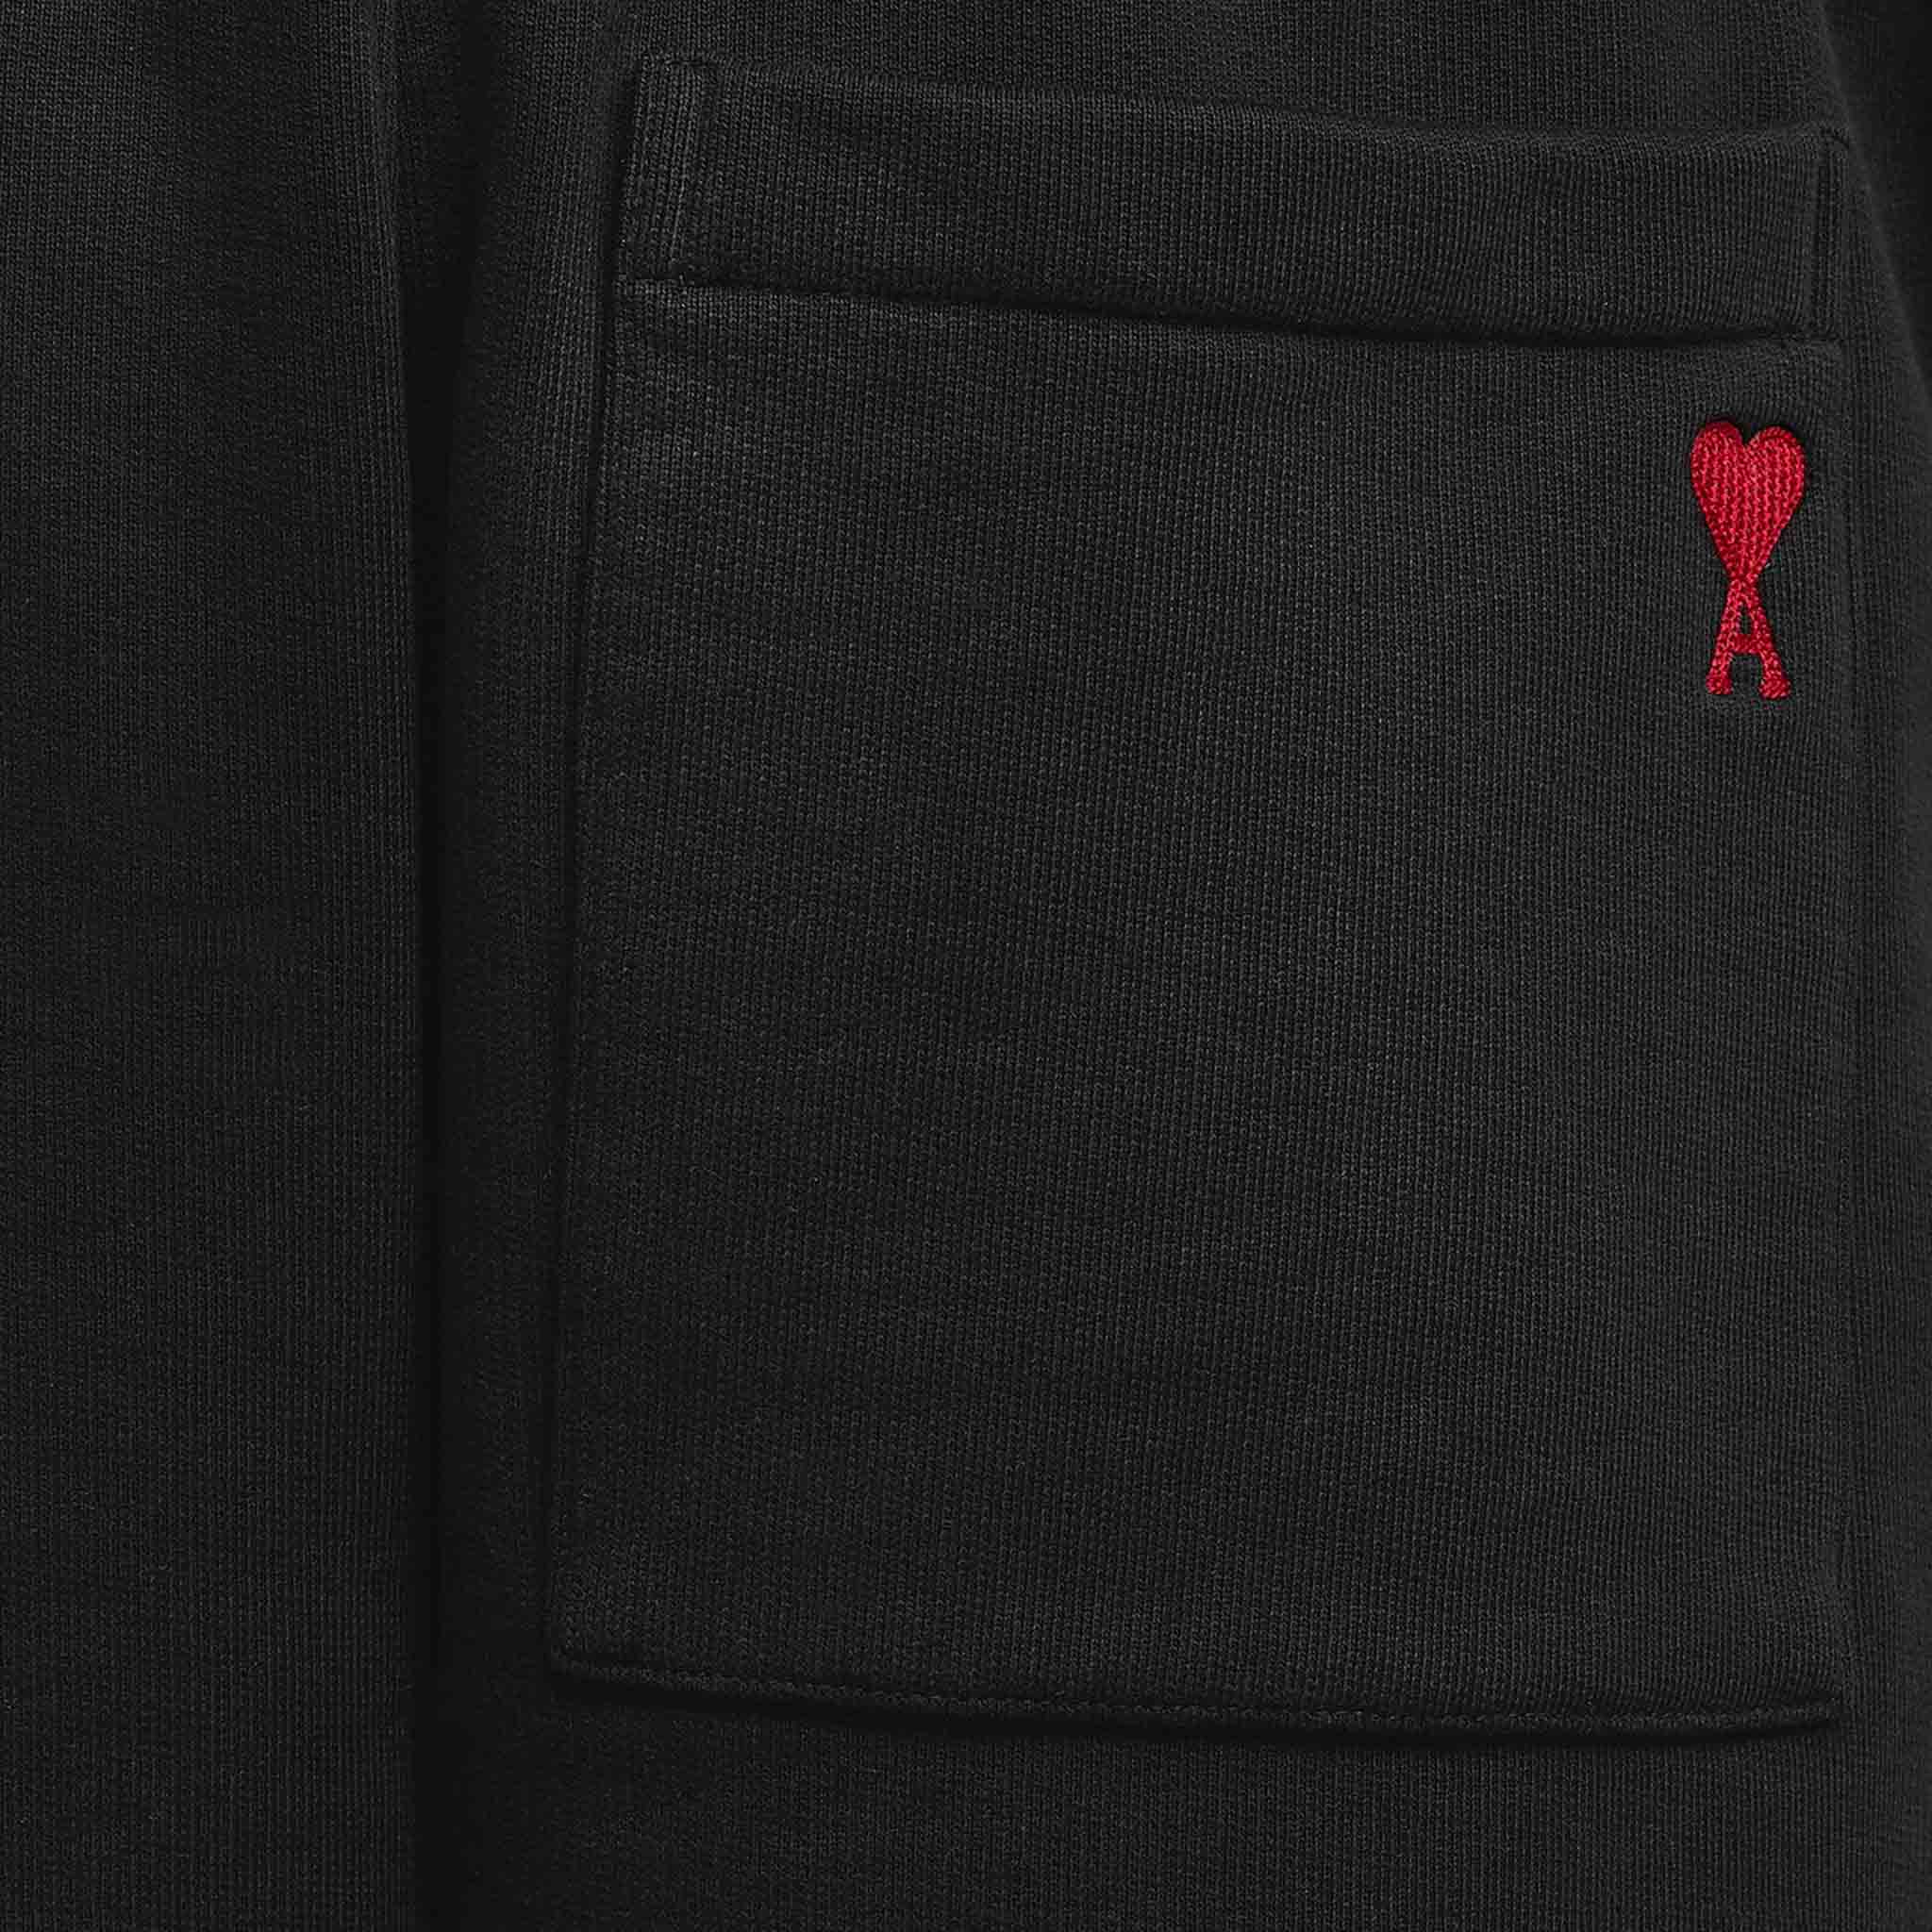 Ami Paris De Coeur Shorts in Black / Red Heart